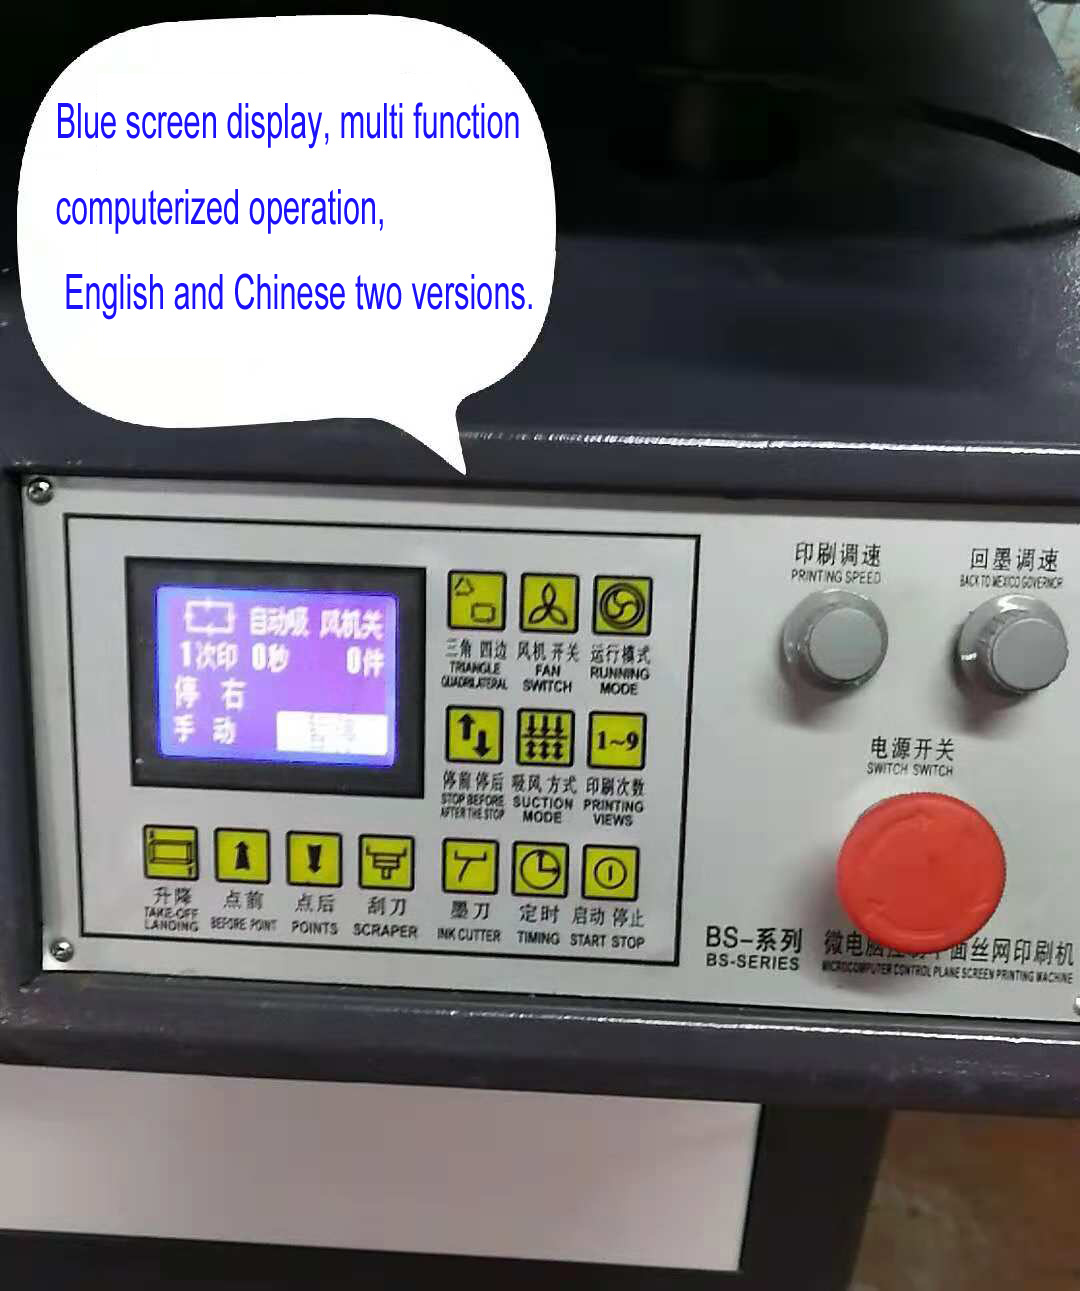 دستگاه چاپ صفحه ابریشم با دستگاه خشک کردن خودکار و دستگاه خشک کردن UV